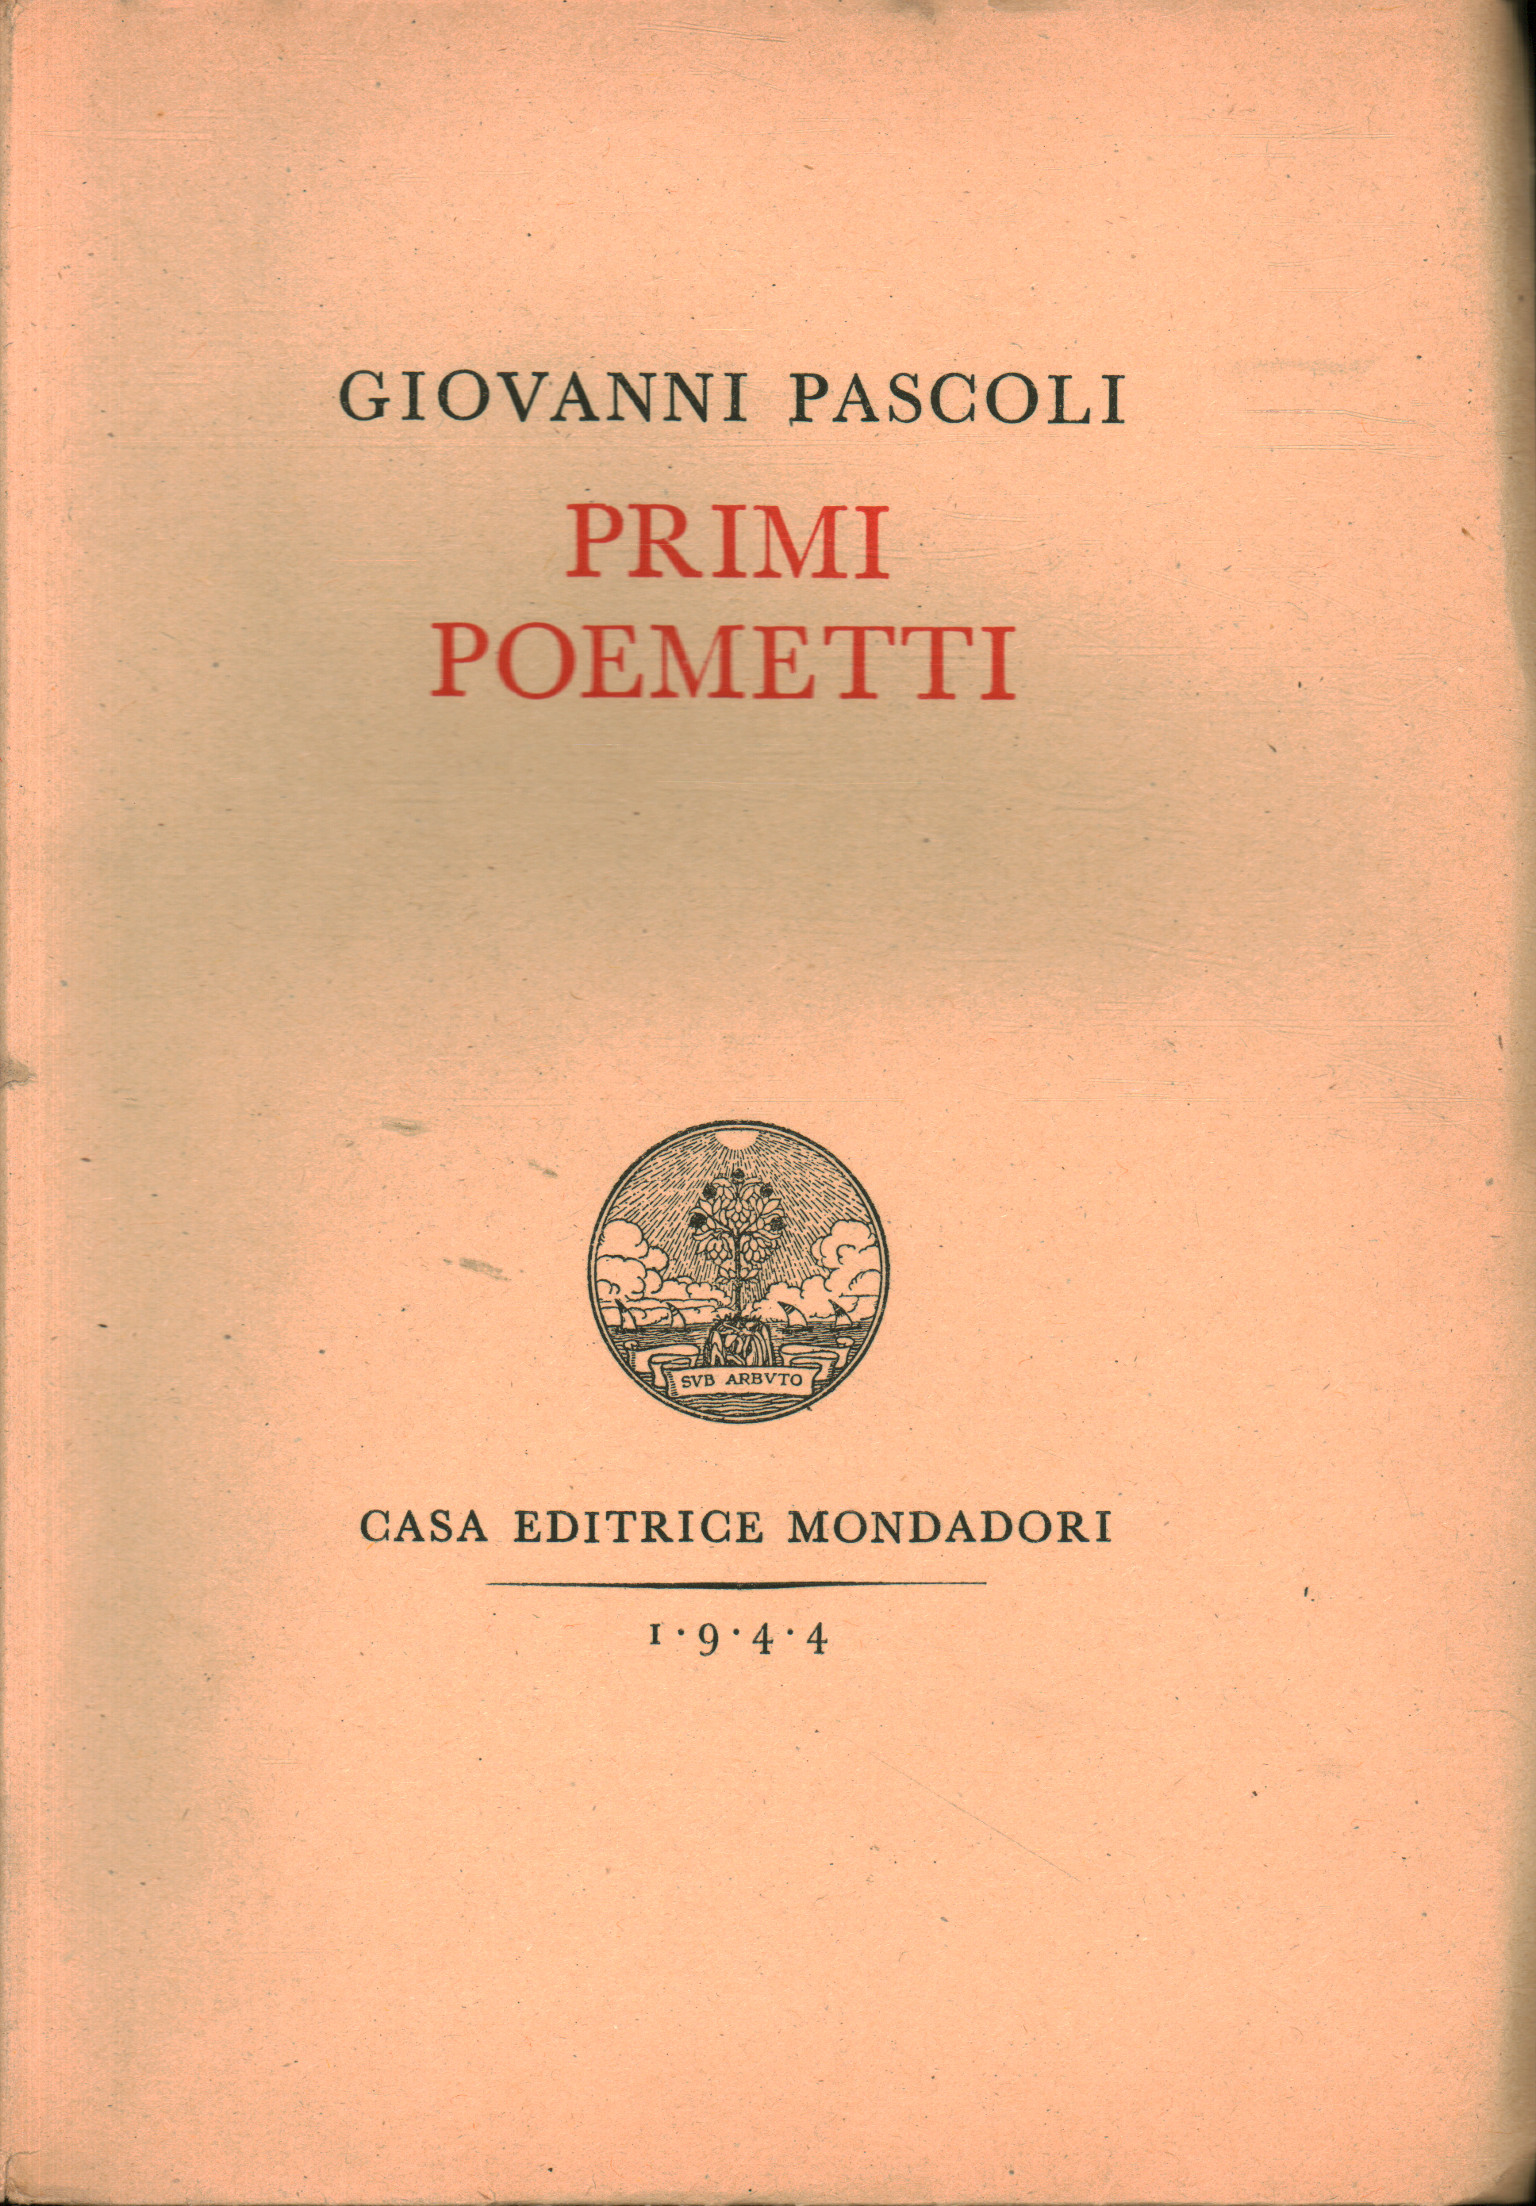 Primi poemetti, Giovanni Pascoli